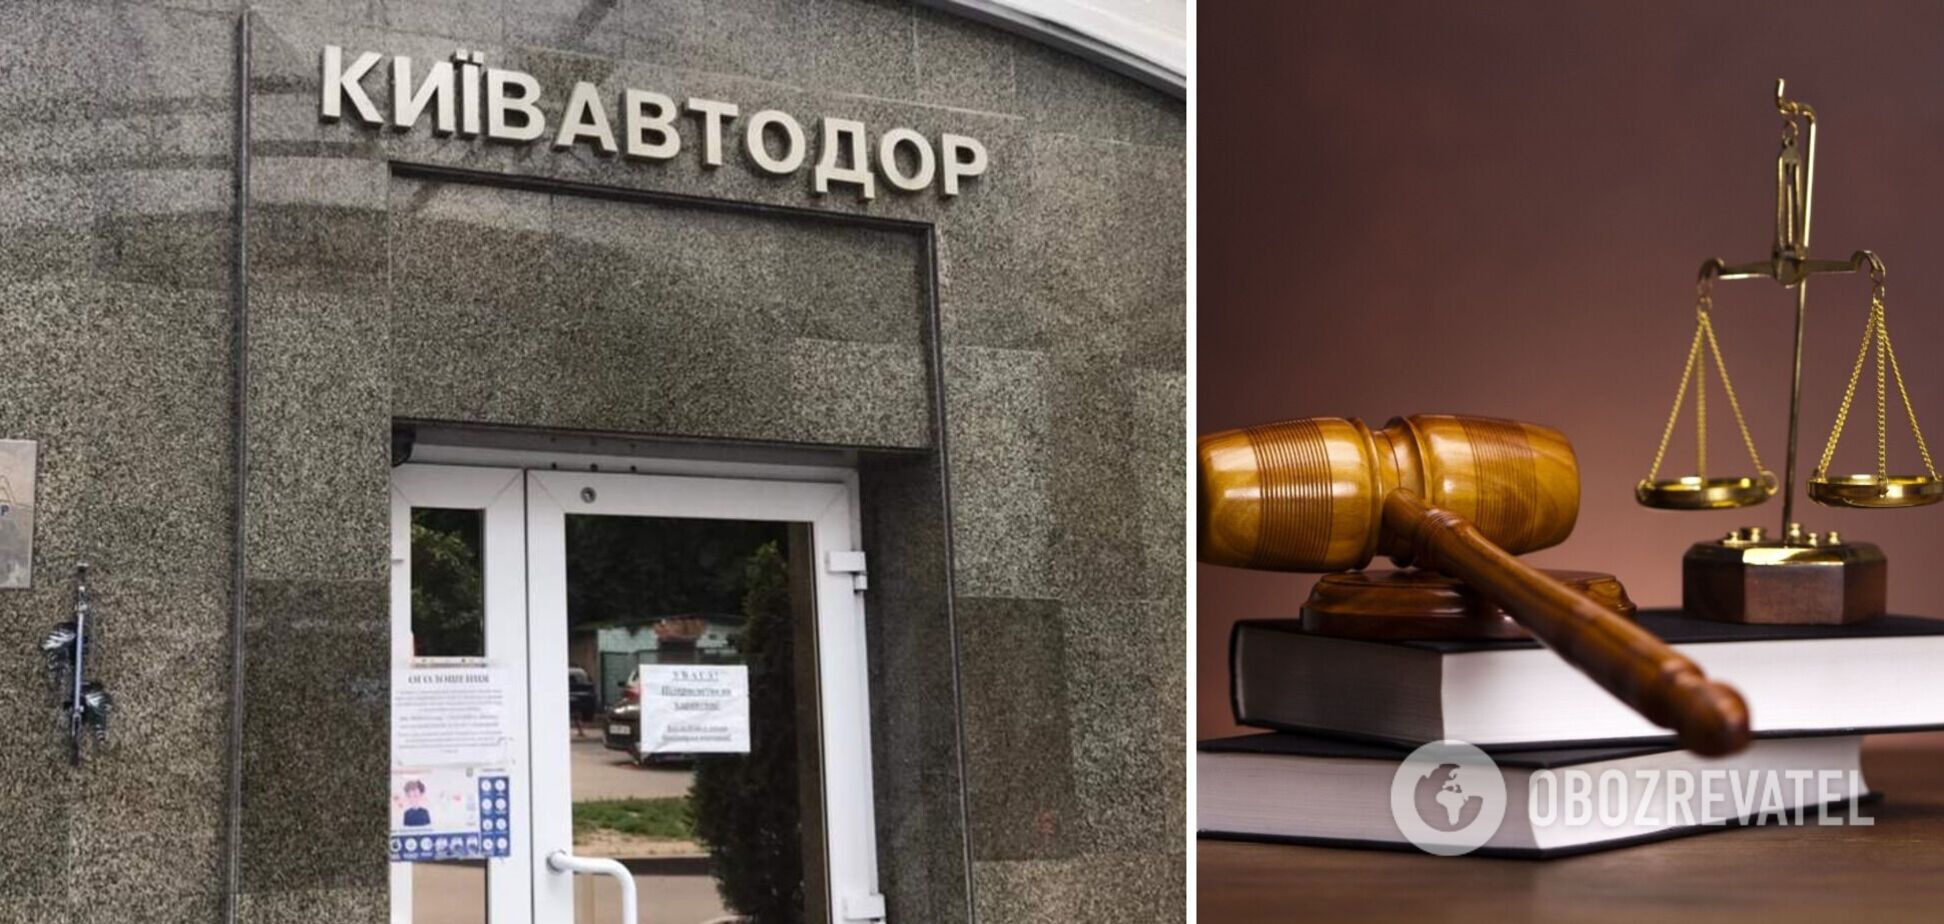 Прокурори у справі Київавтодору вимагали вилучення неіснуючих цигарок: суд відмовив. Ексклюзив